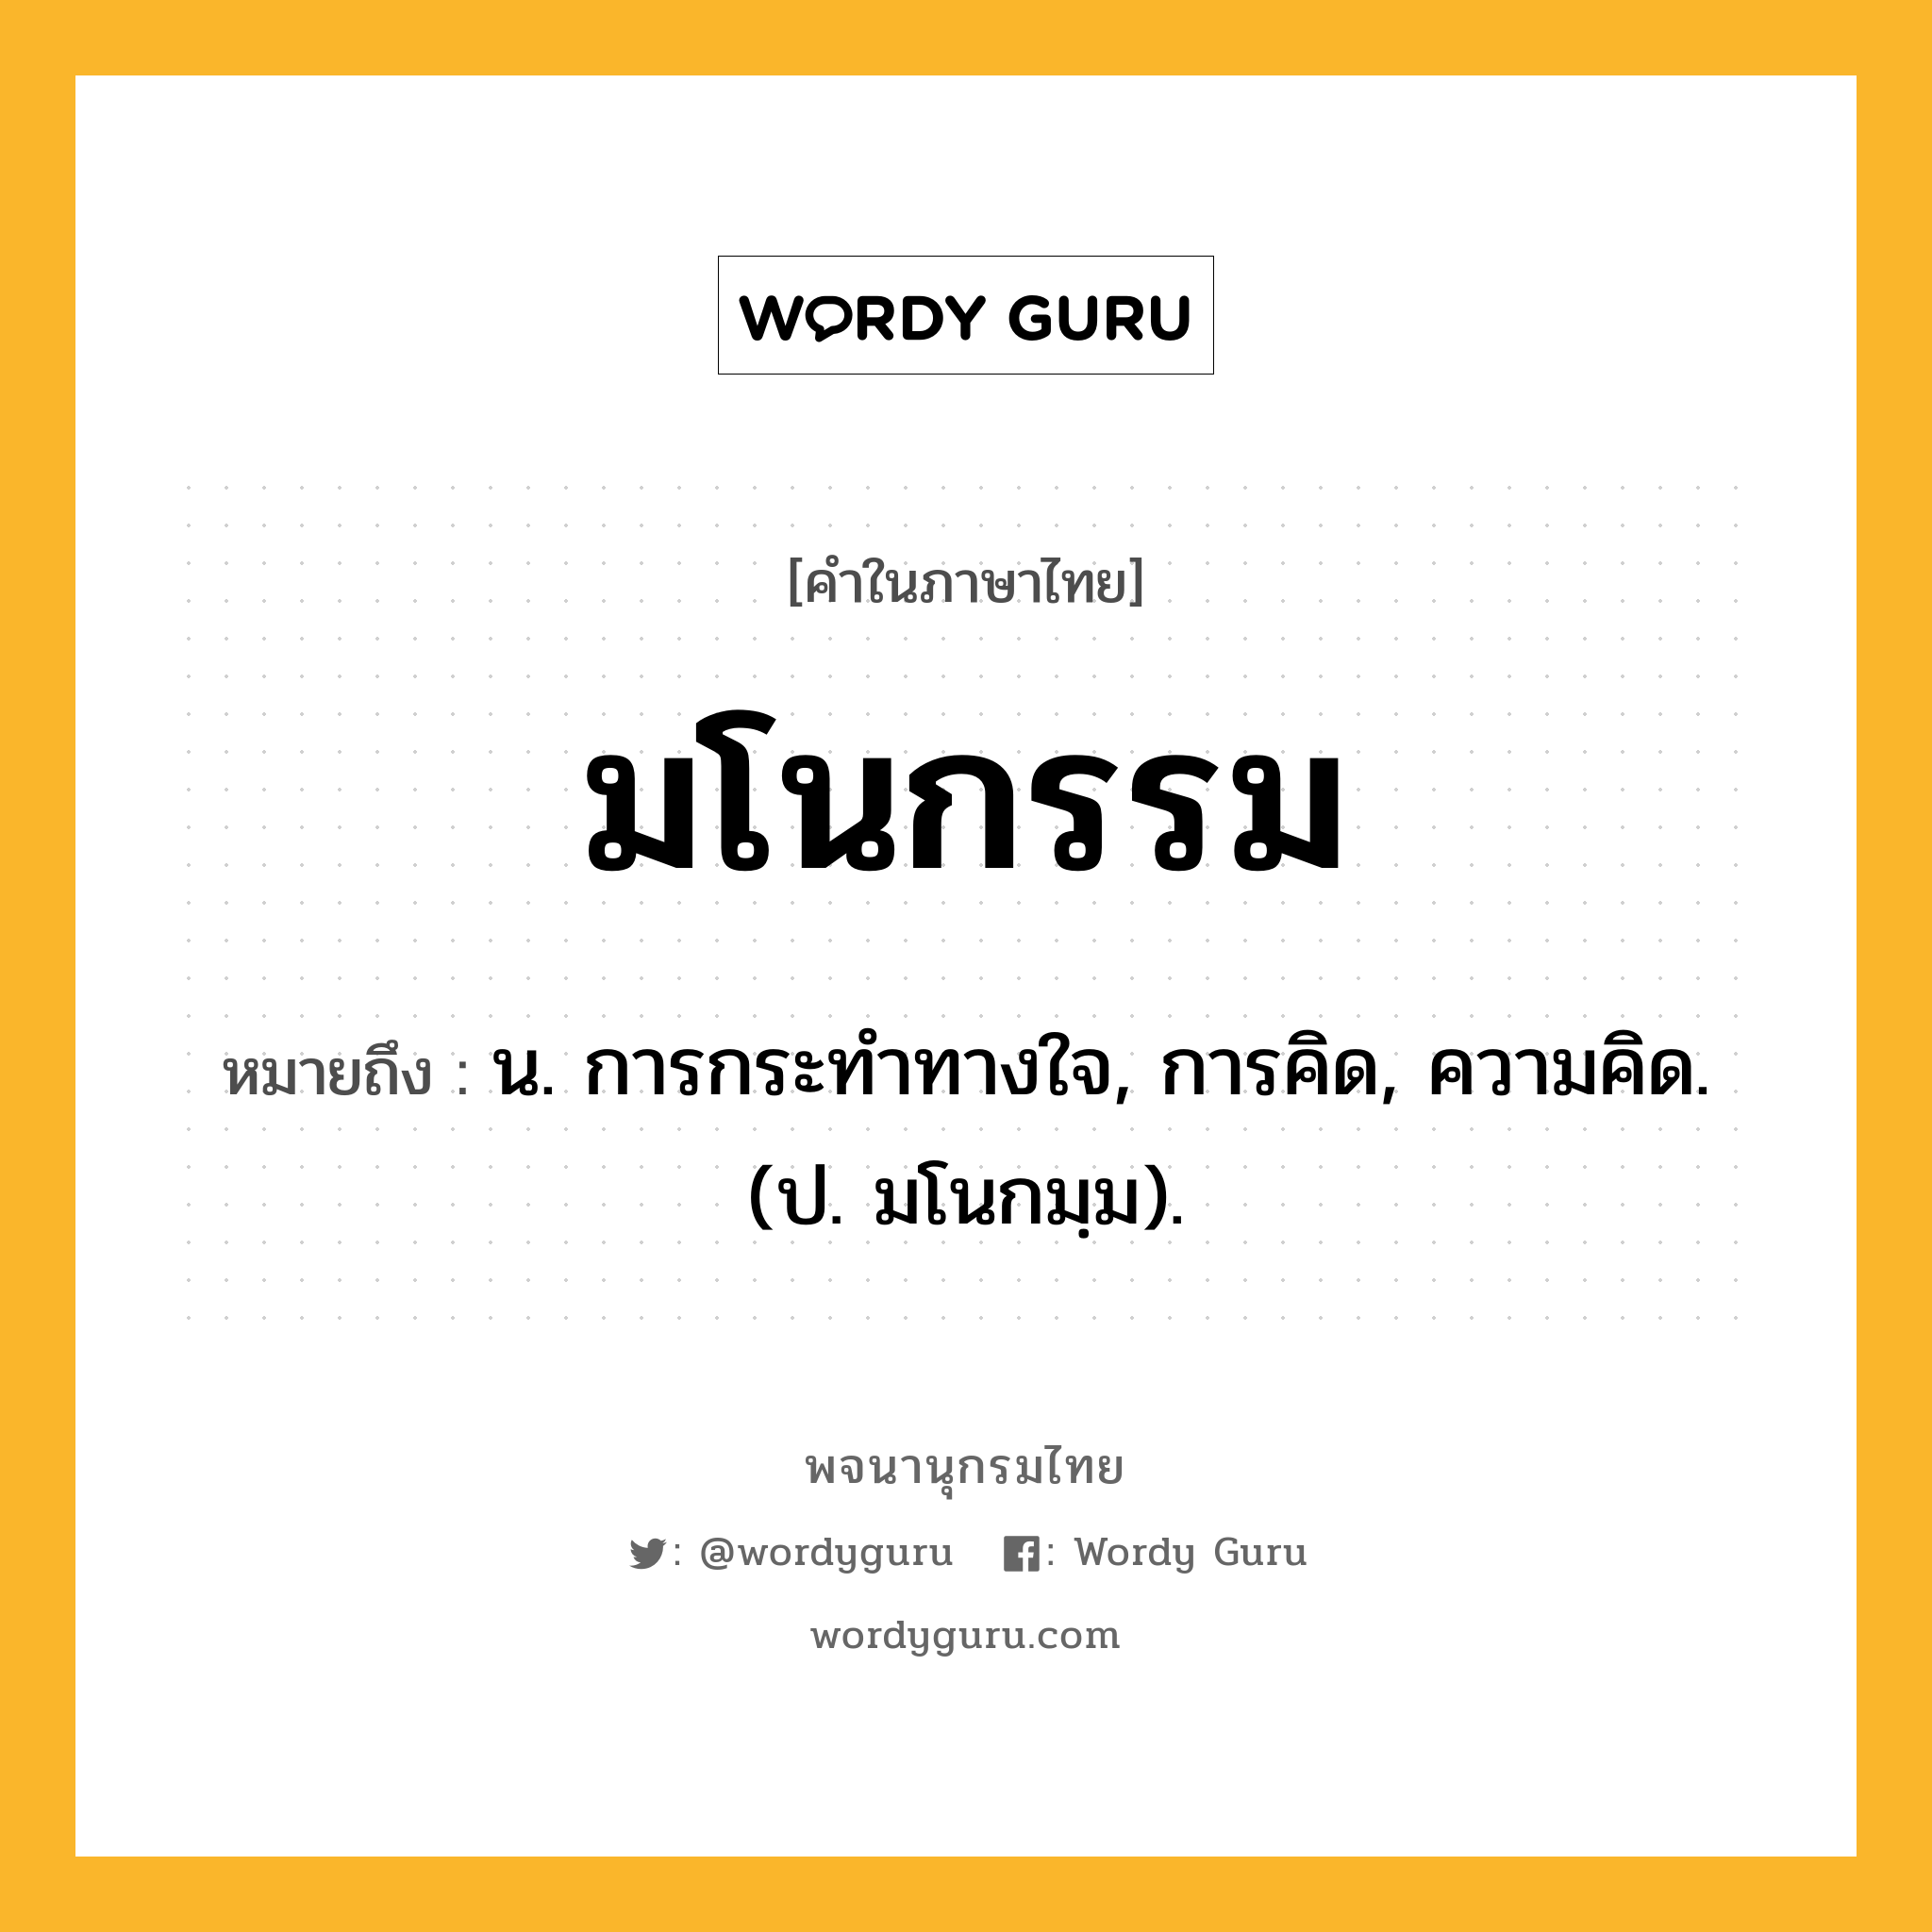 มโนกรรม หมายถึงอะไร?, คำในภาษาไทย มโนกรรม หมายถึง น. การกระทำทางใจ, การคิด, ความคิด. (ป. มโนกมฺม).